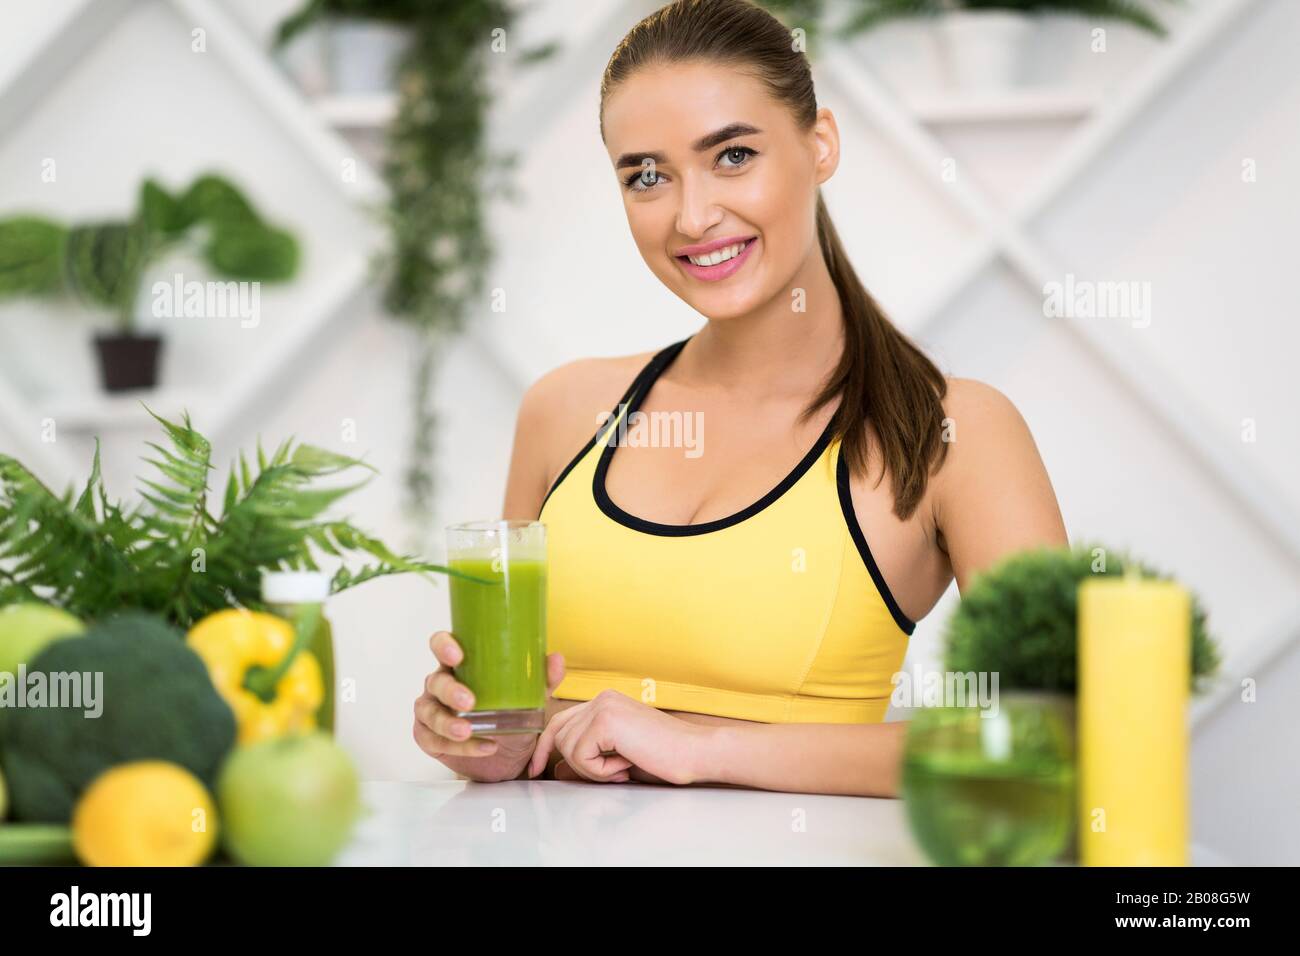 Sporternährung. Aufgeregtes Mädchen, das Glas mit grünem Entgiftungsgetränk hält Stockfoto